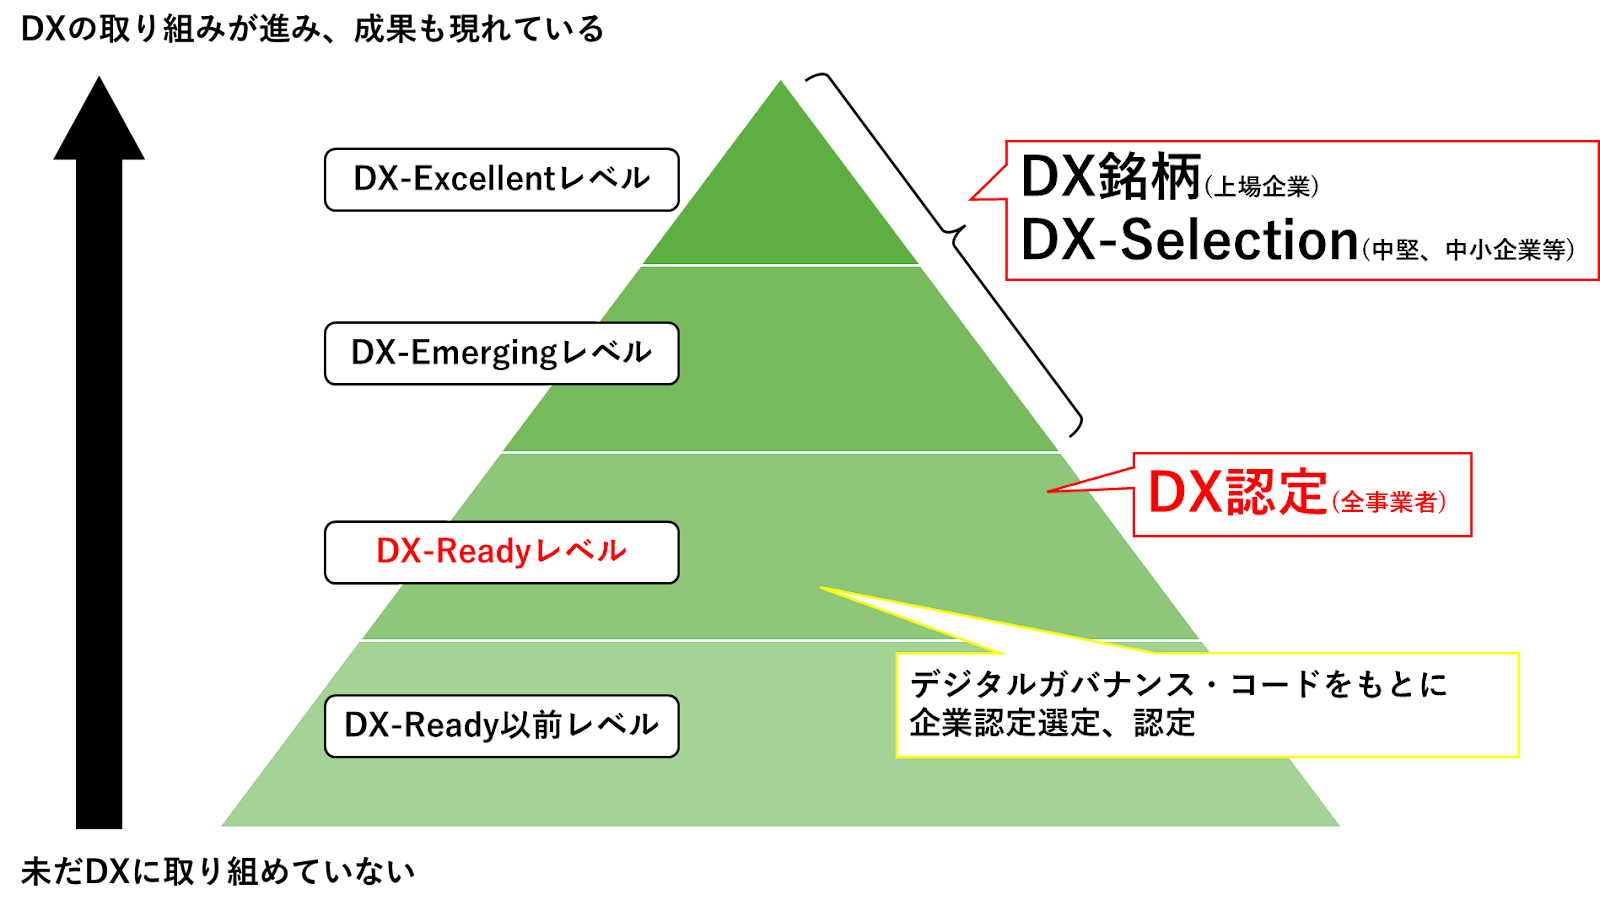 DX認定レベルの種類を示した図を挿入しいています。